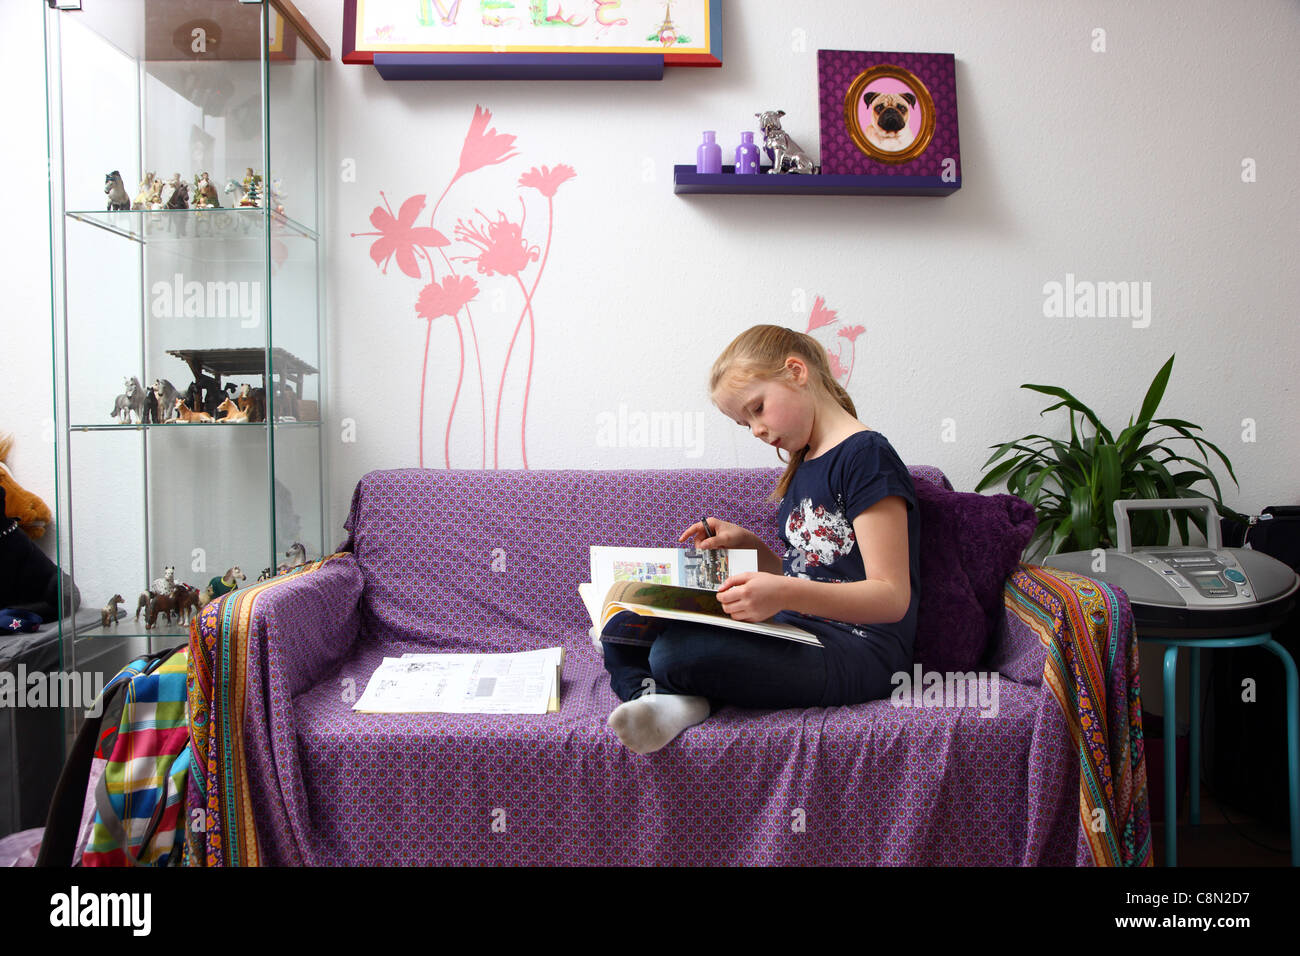 Ragazza, 10 anni, di apprendimento per la scuola, a casa nella sua stanza, studiare. Foto Stock